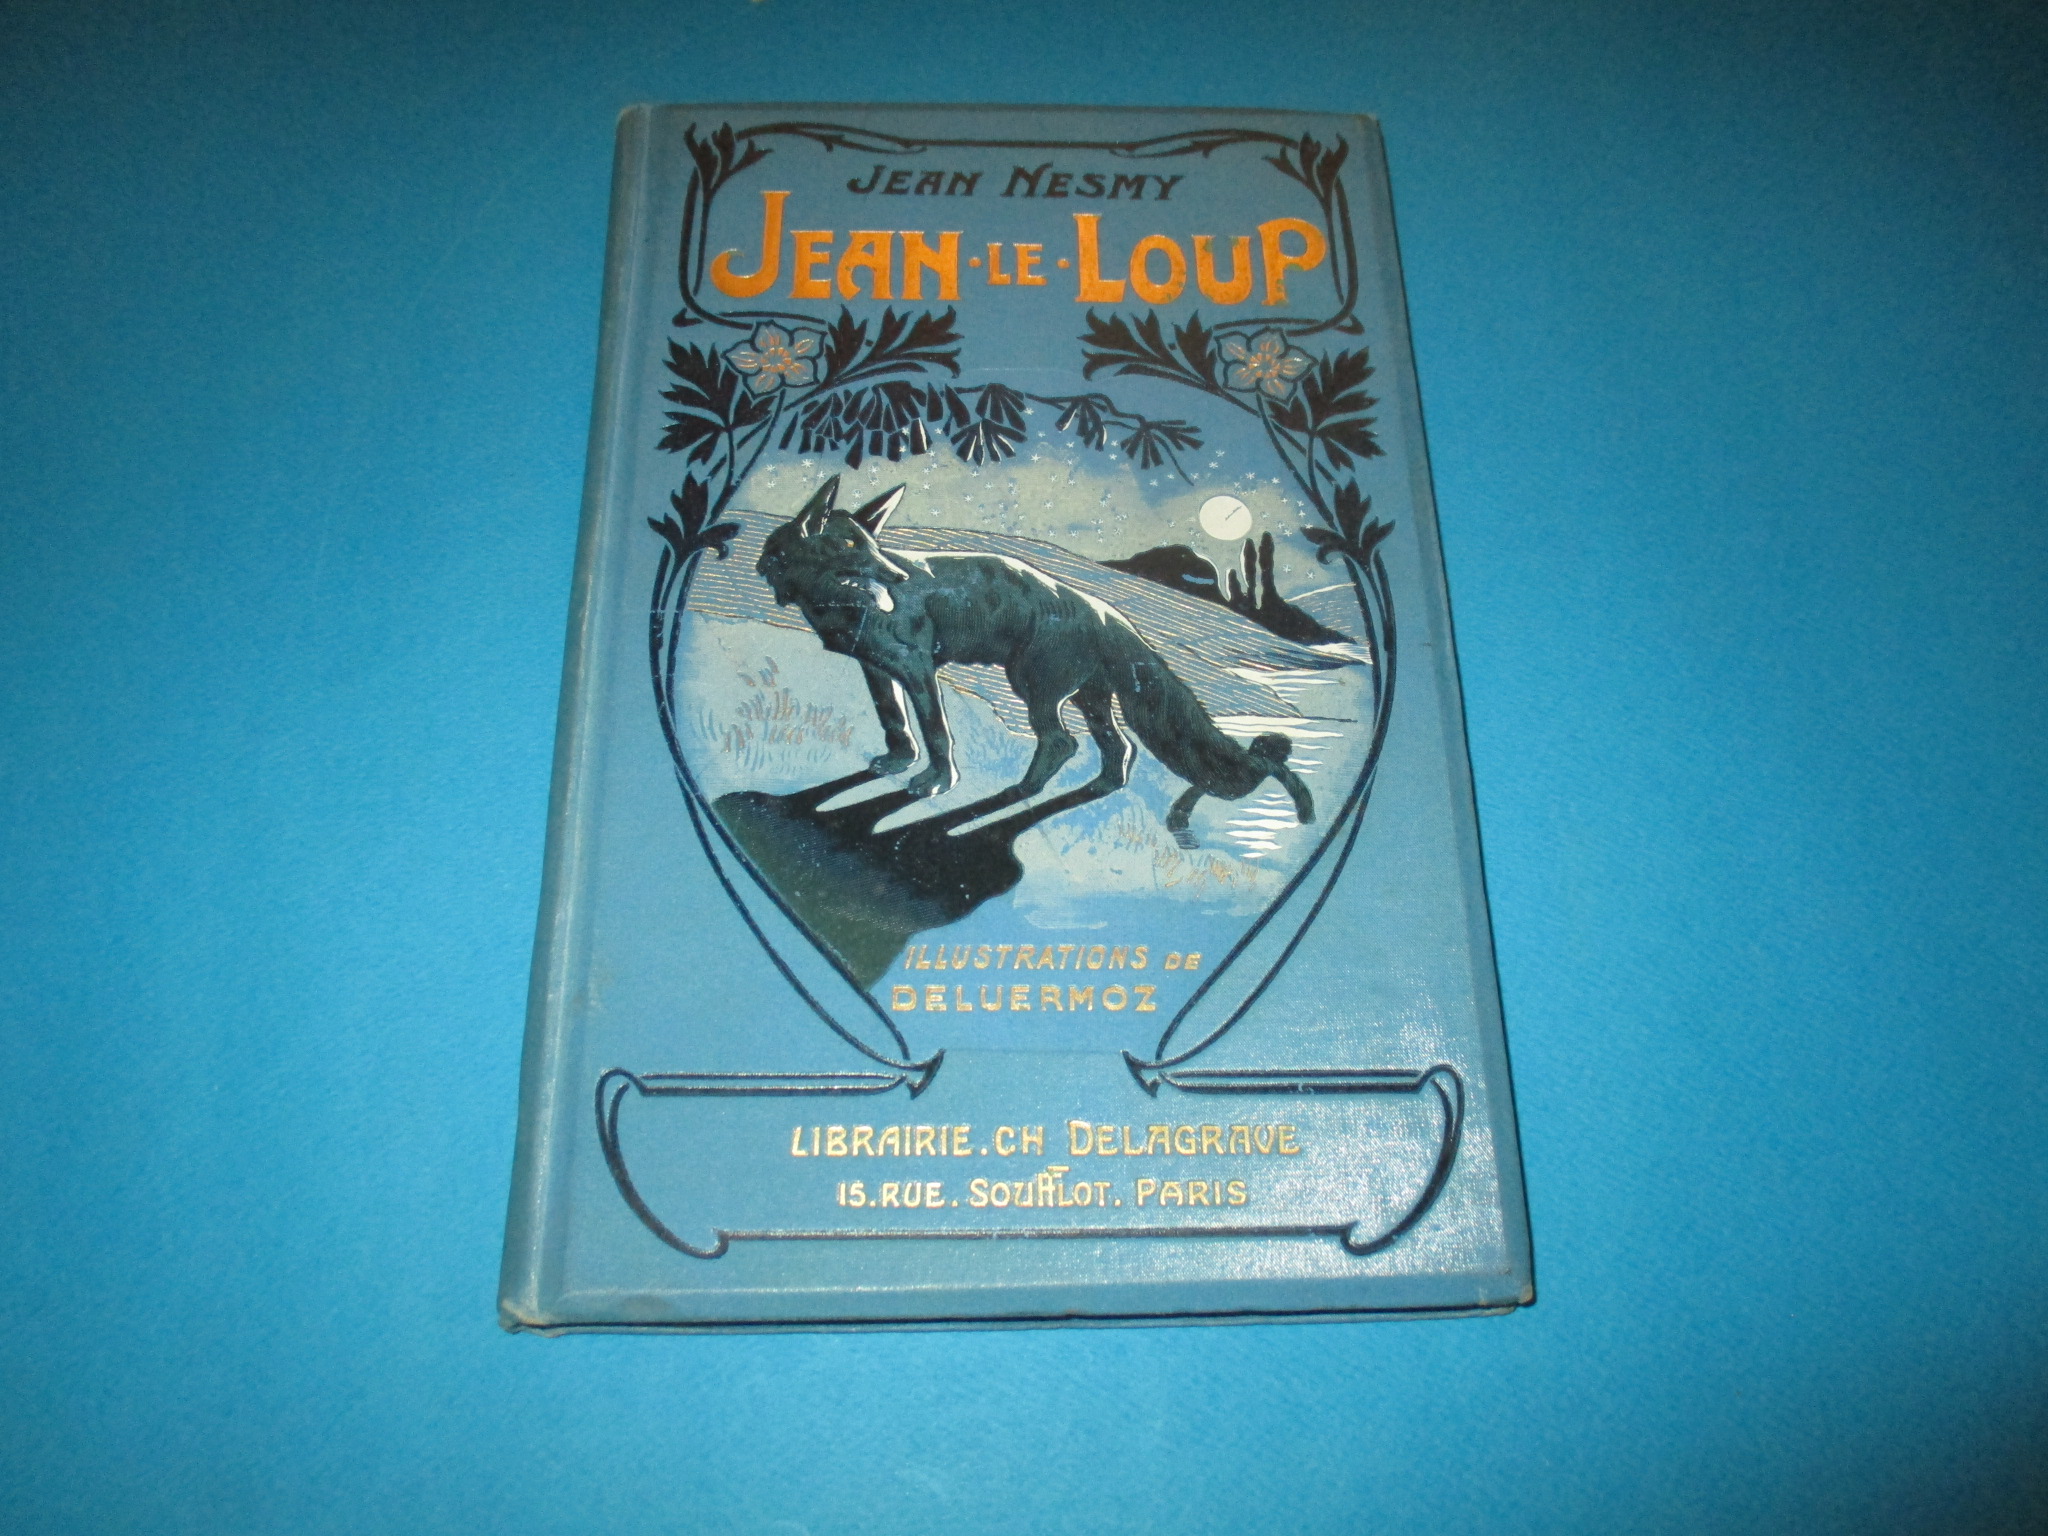 Jean-le-Loup, Jean Nesmy, Illustrations de Deluermoz, Delagrave